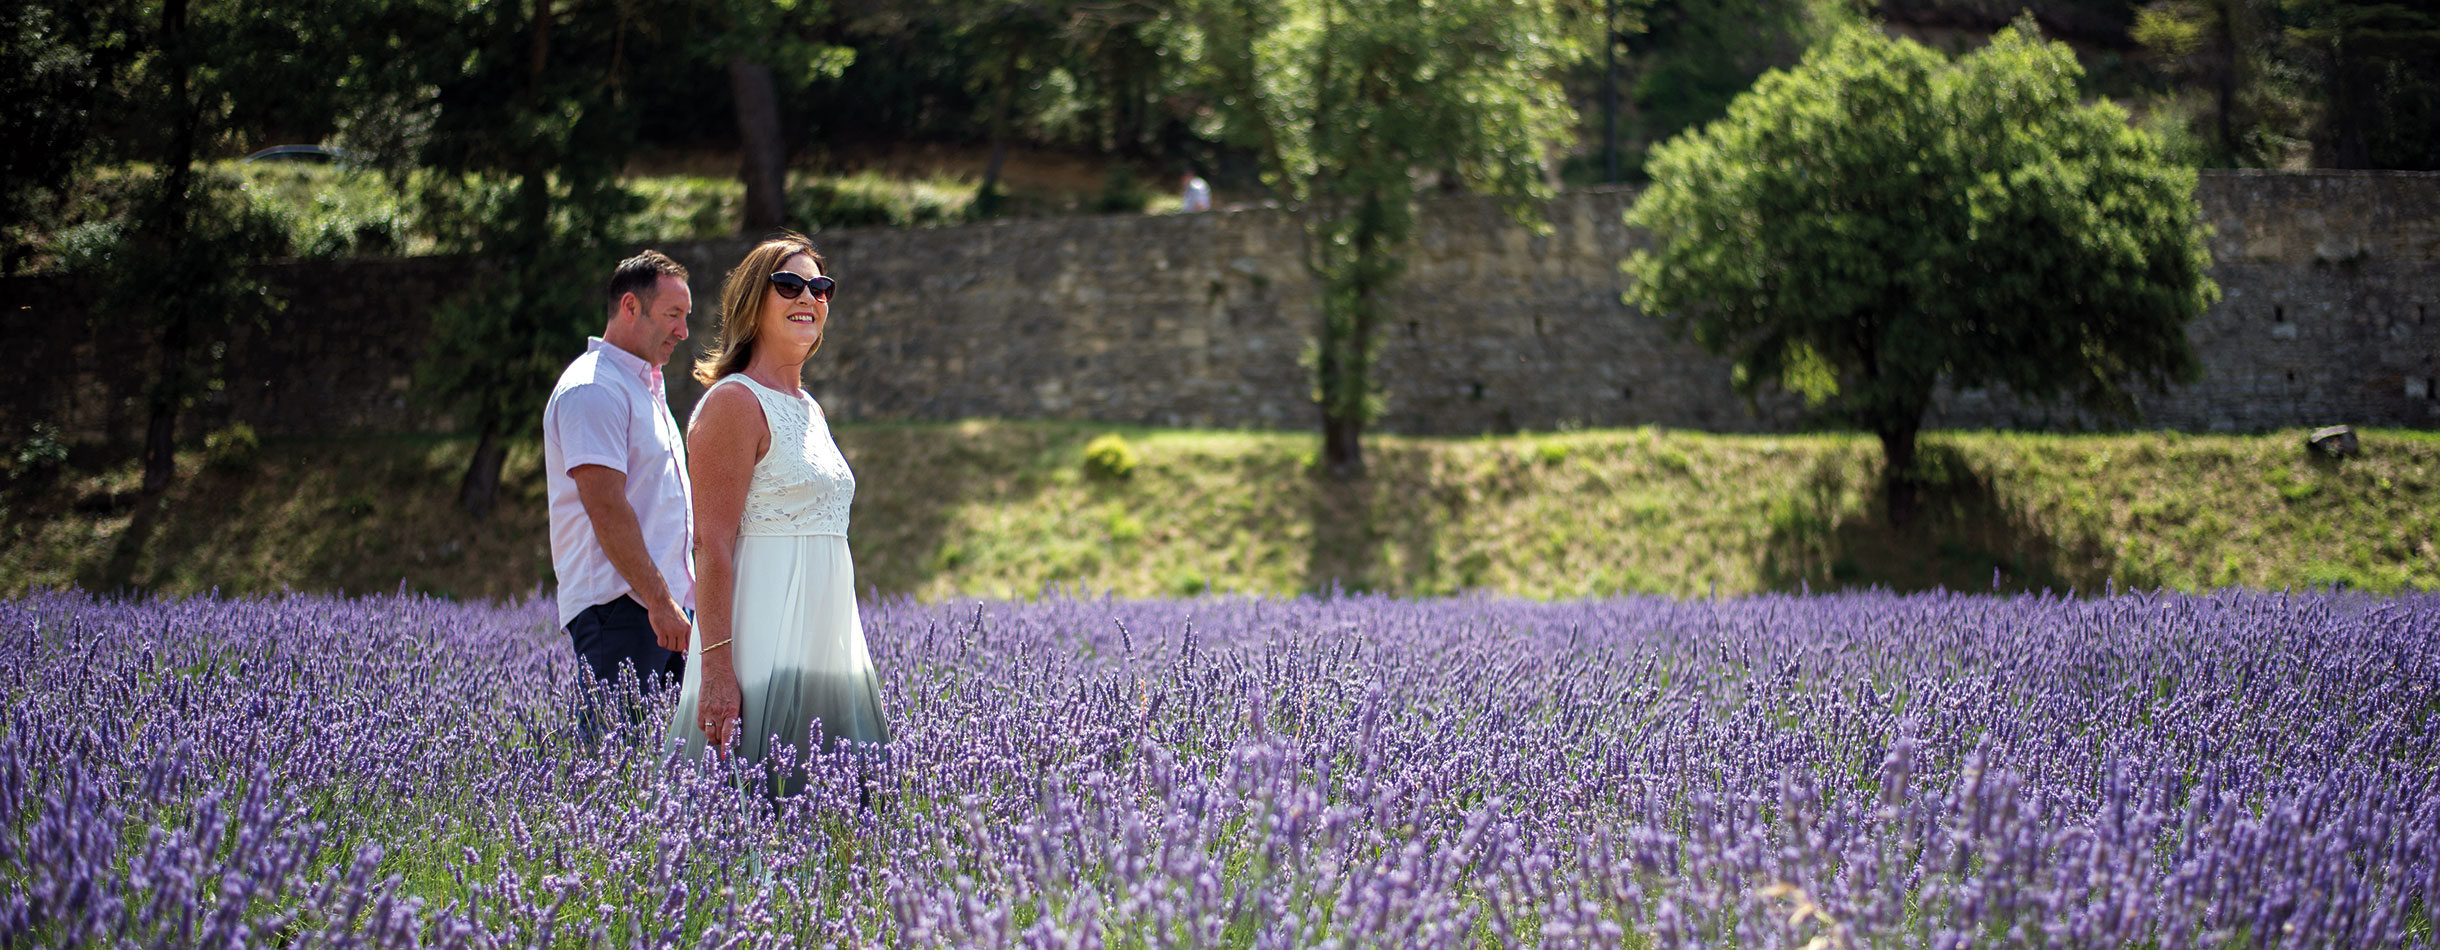 Couple exploring lavender fields, France 